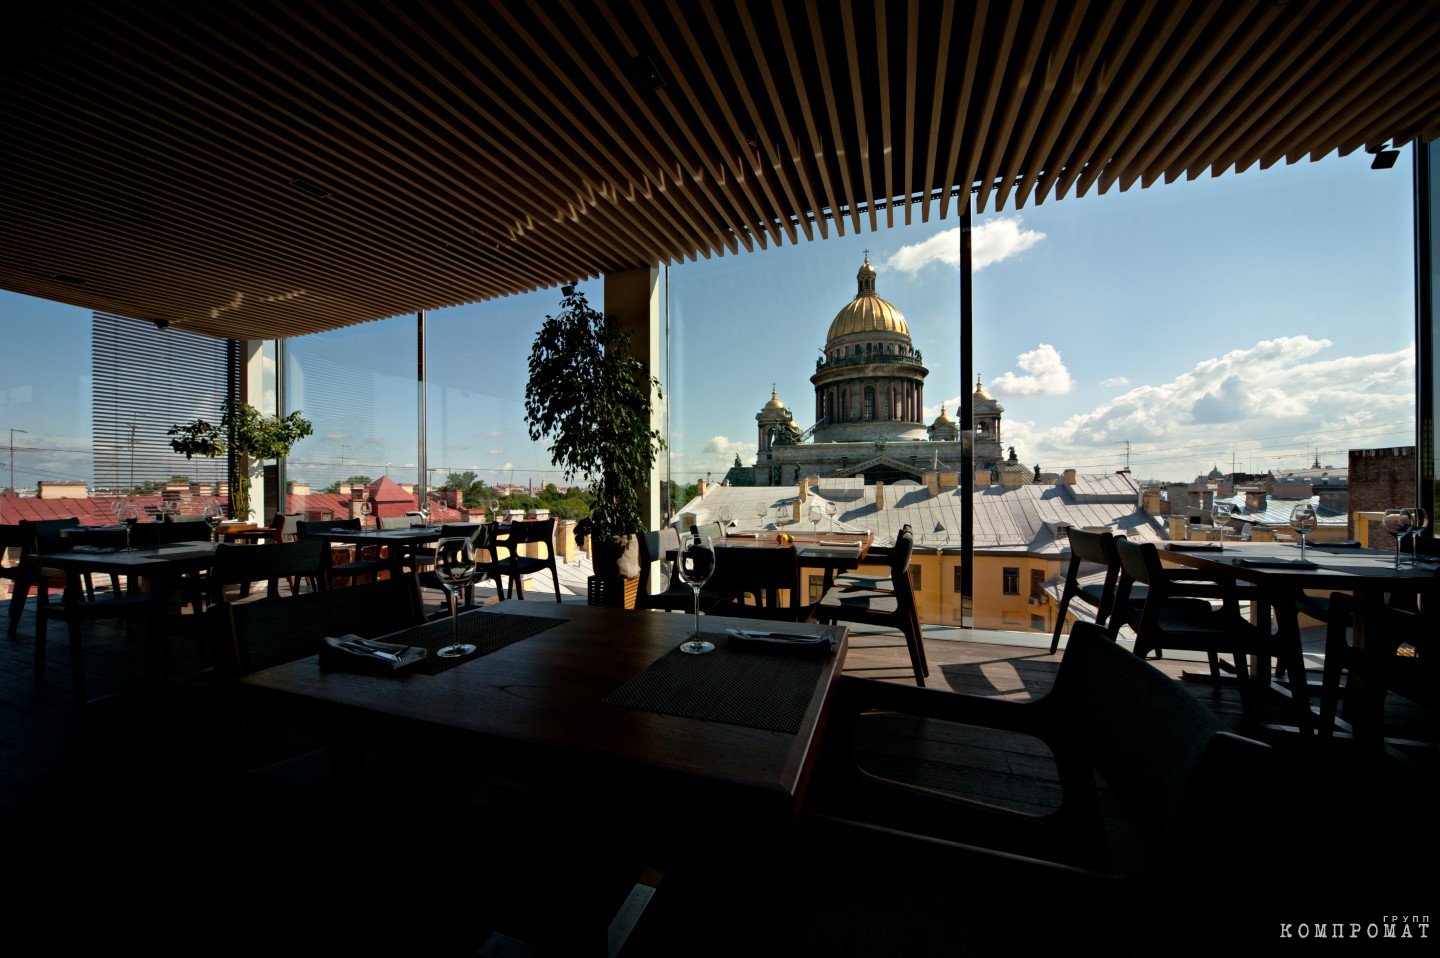 Вид с террасы БЦ Quattro Corti на Исаакиевский собор Санкт-Петербурга. В 2010-х этот бизнес-центр считался самым роскошным в городе. Инвестиции в него оценивались не менее чем в $80 млн